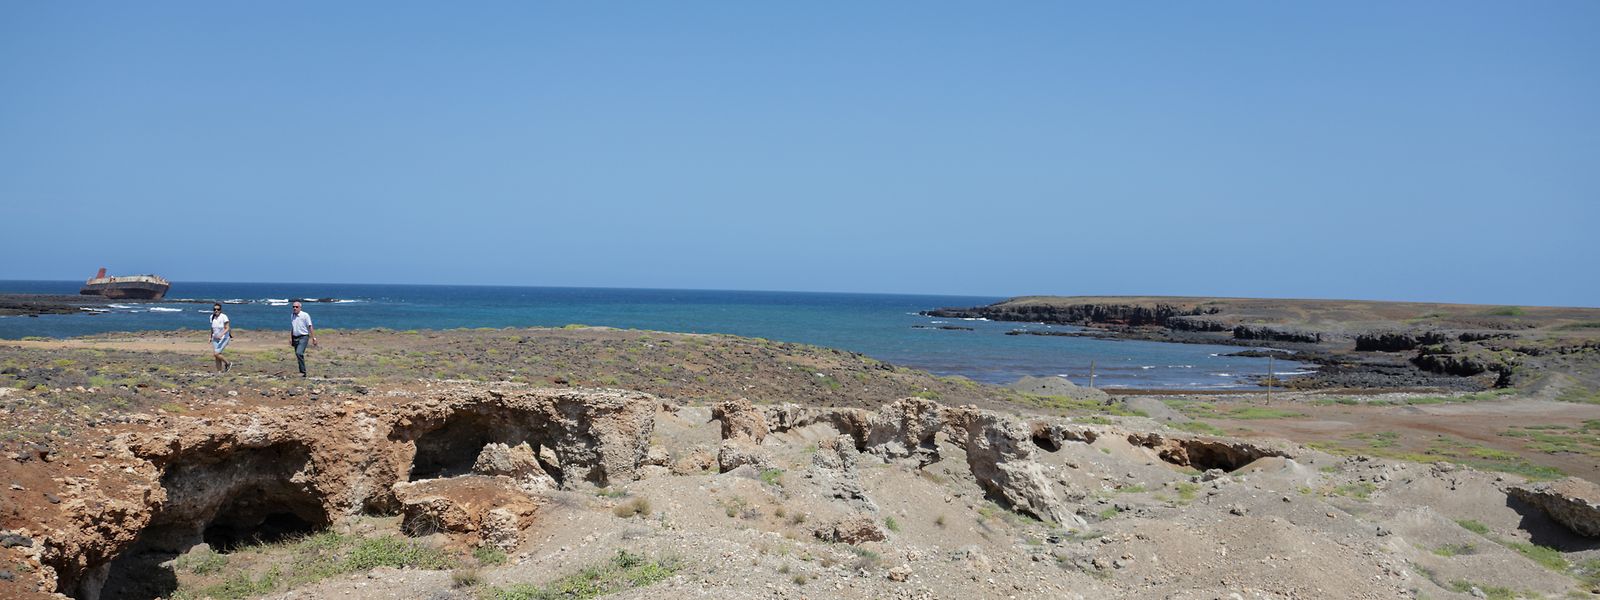 Investigadores descobriram um campo de corais de cerca de 1.000 metros quadrados que precisa ser preservado, no concelho de São Domingos, ilha de Santiago, Cabo Verde.